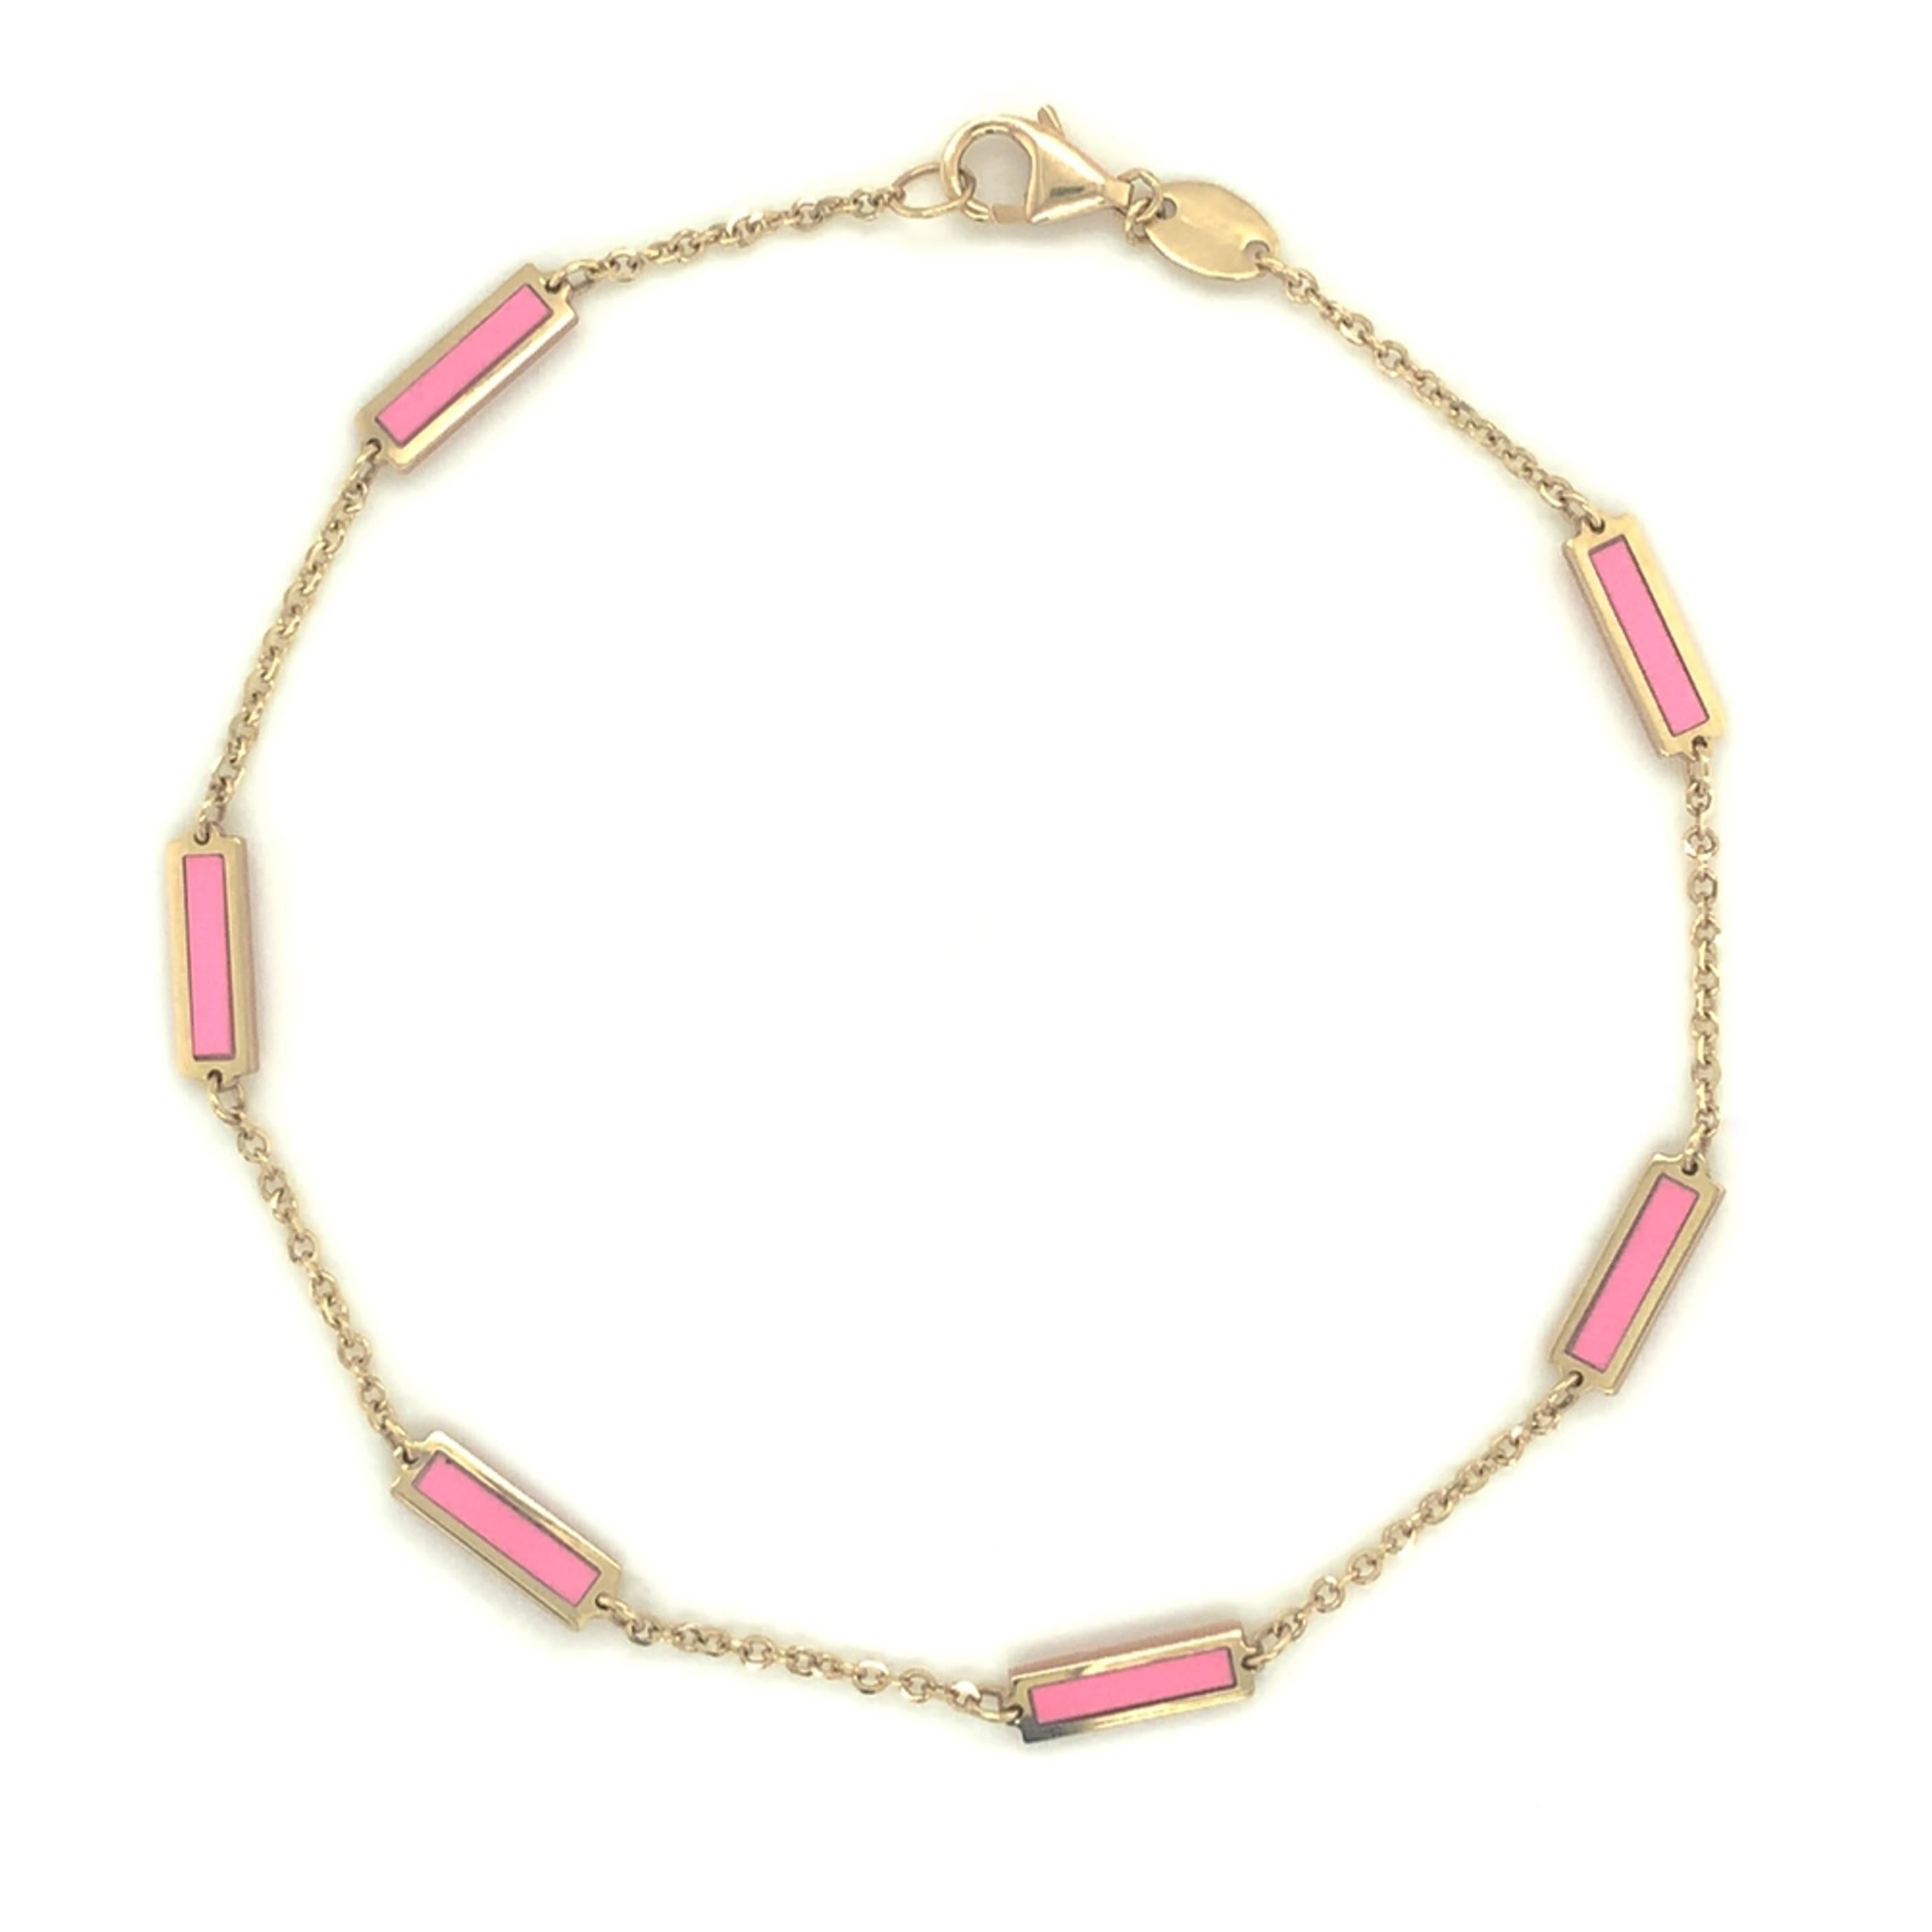 Bracelet de qualité en agate rose : Axé sur le design et les détails, ce magnifique bracelet de pierres précieuses d'agate rose de votre choix présente un design de barre et est fabriqué en or jaune 14k. La mesure du bracelet est de 7